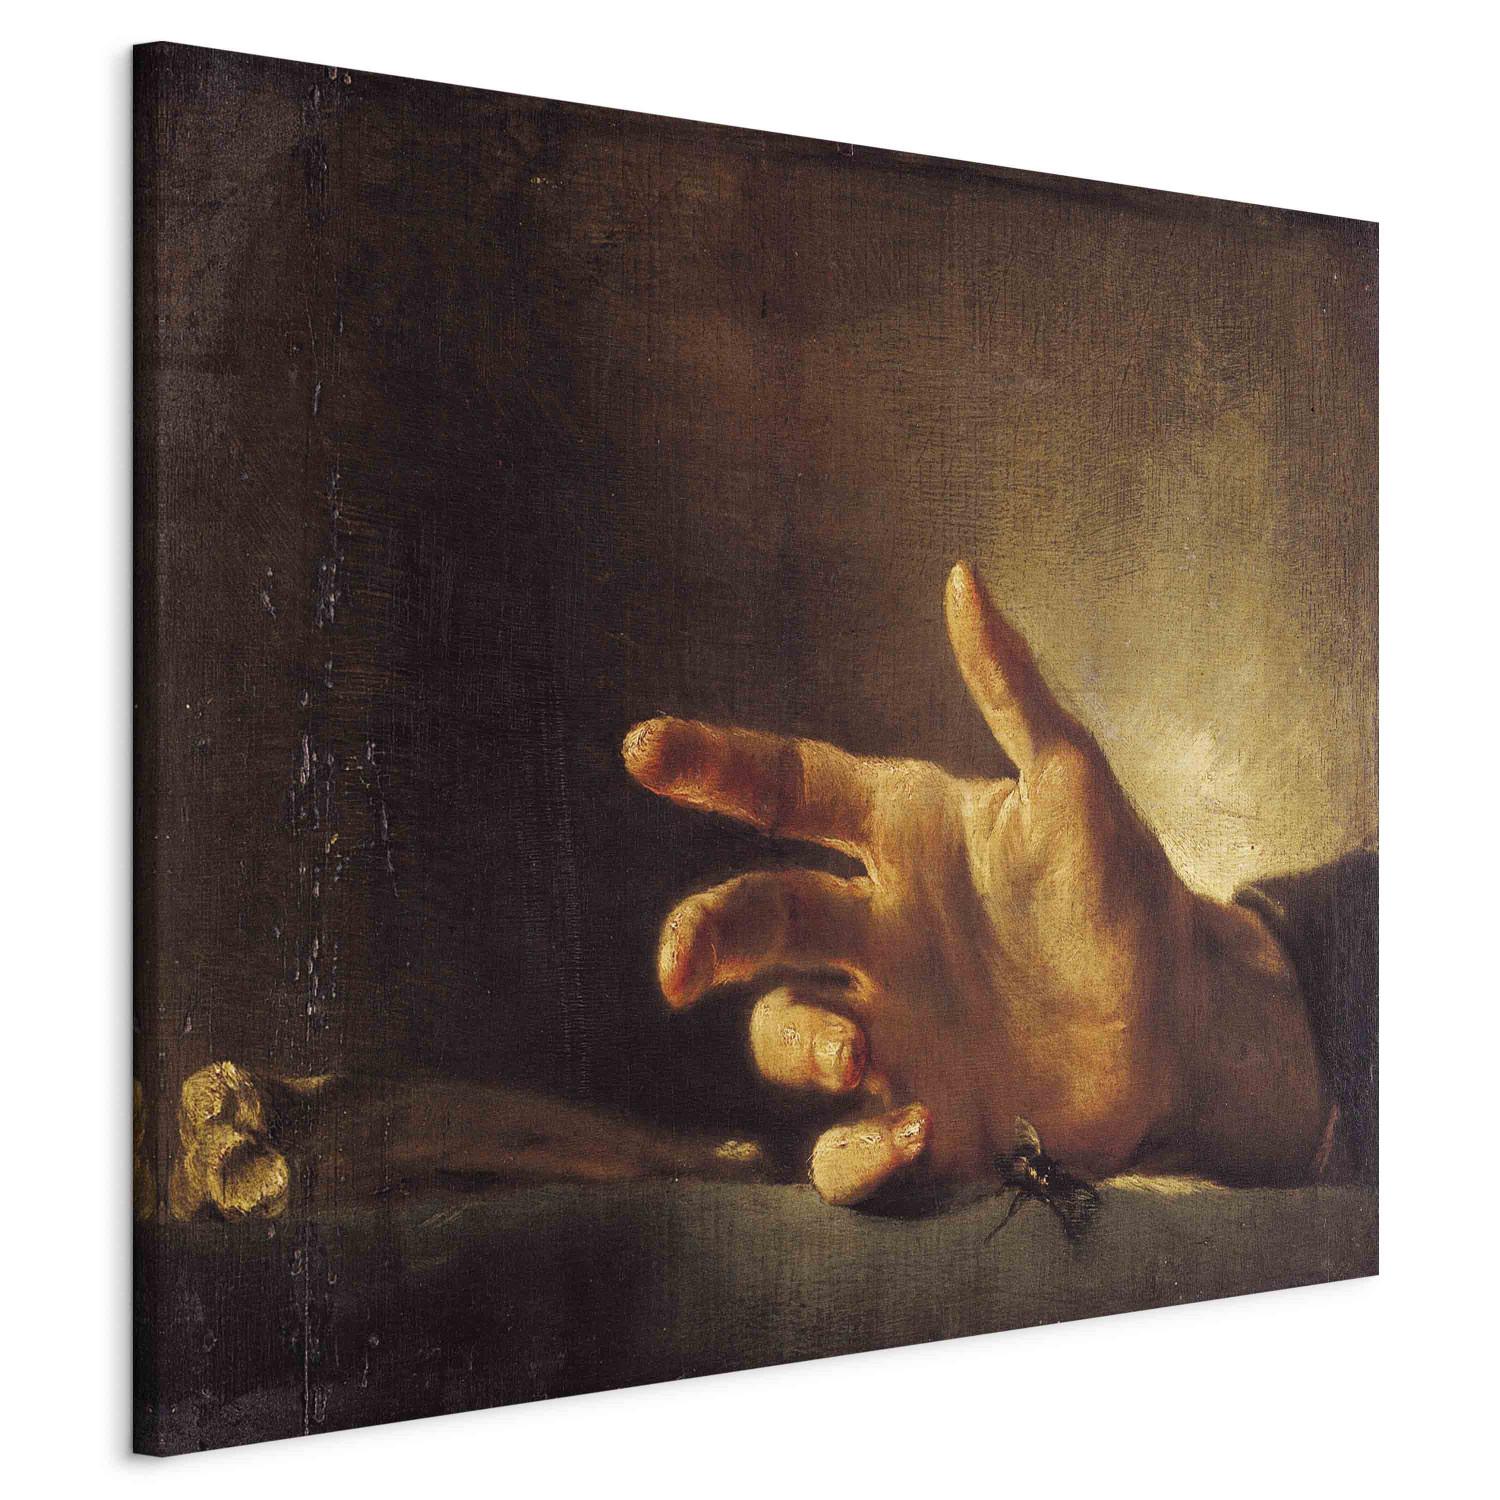 Réplica de pintura Study of a Hand